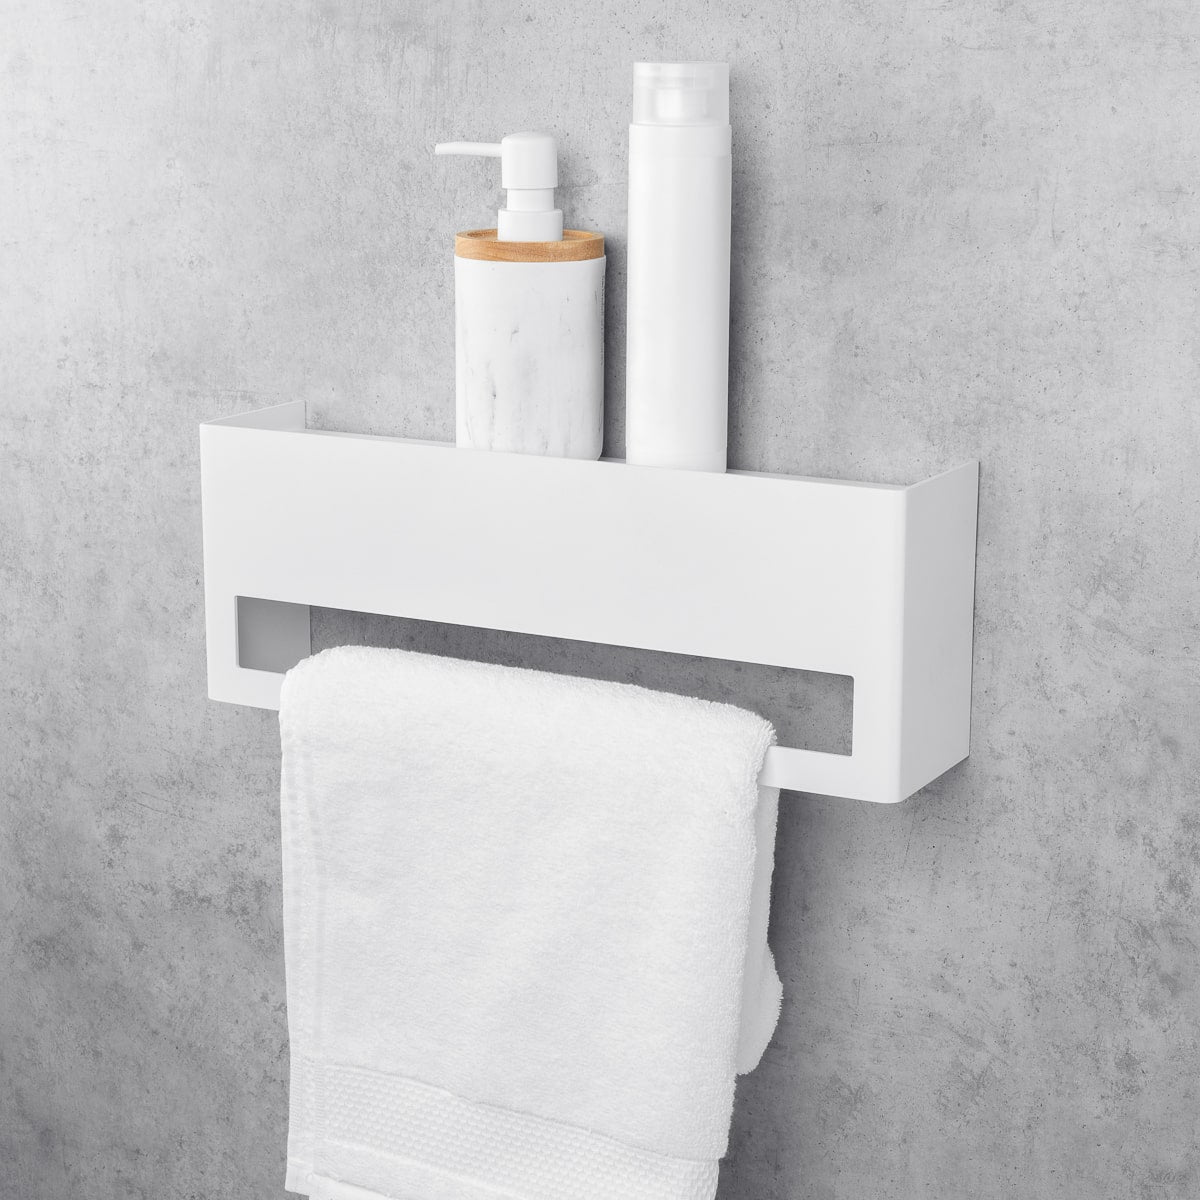 white towel rack with shelf Keyka